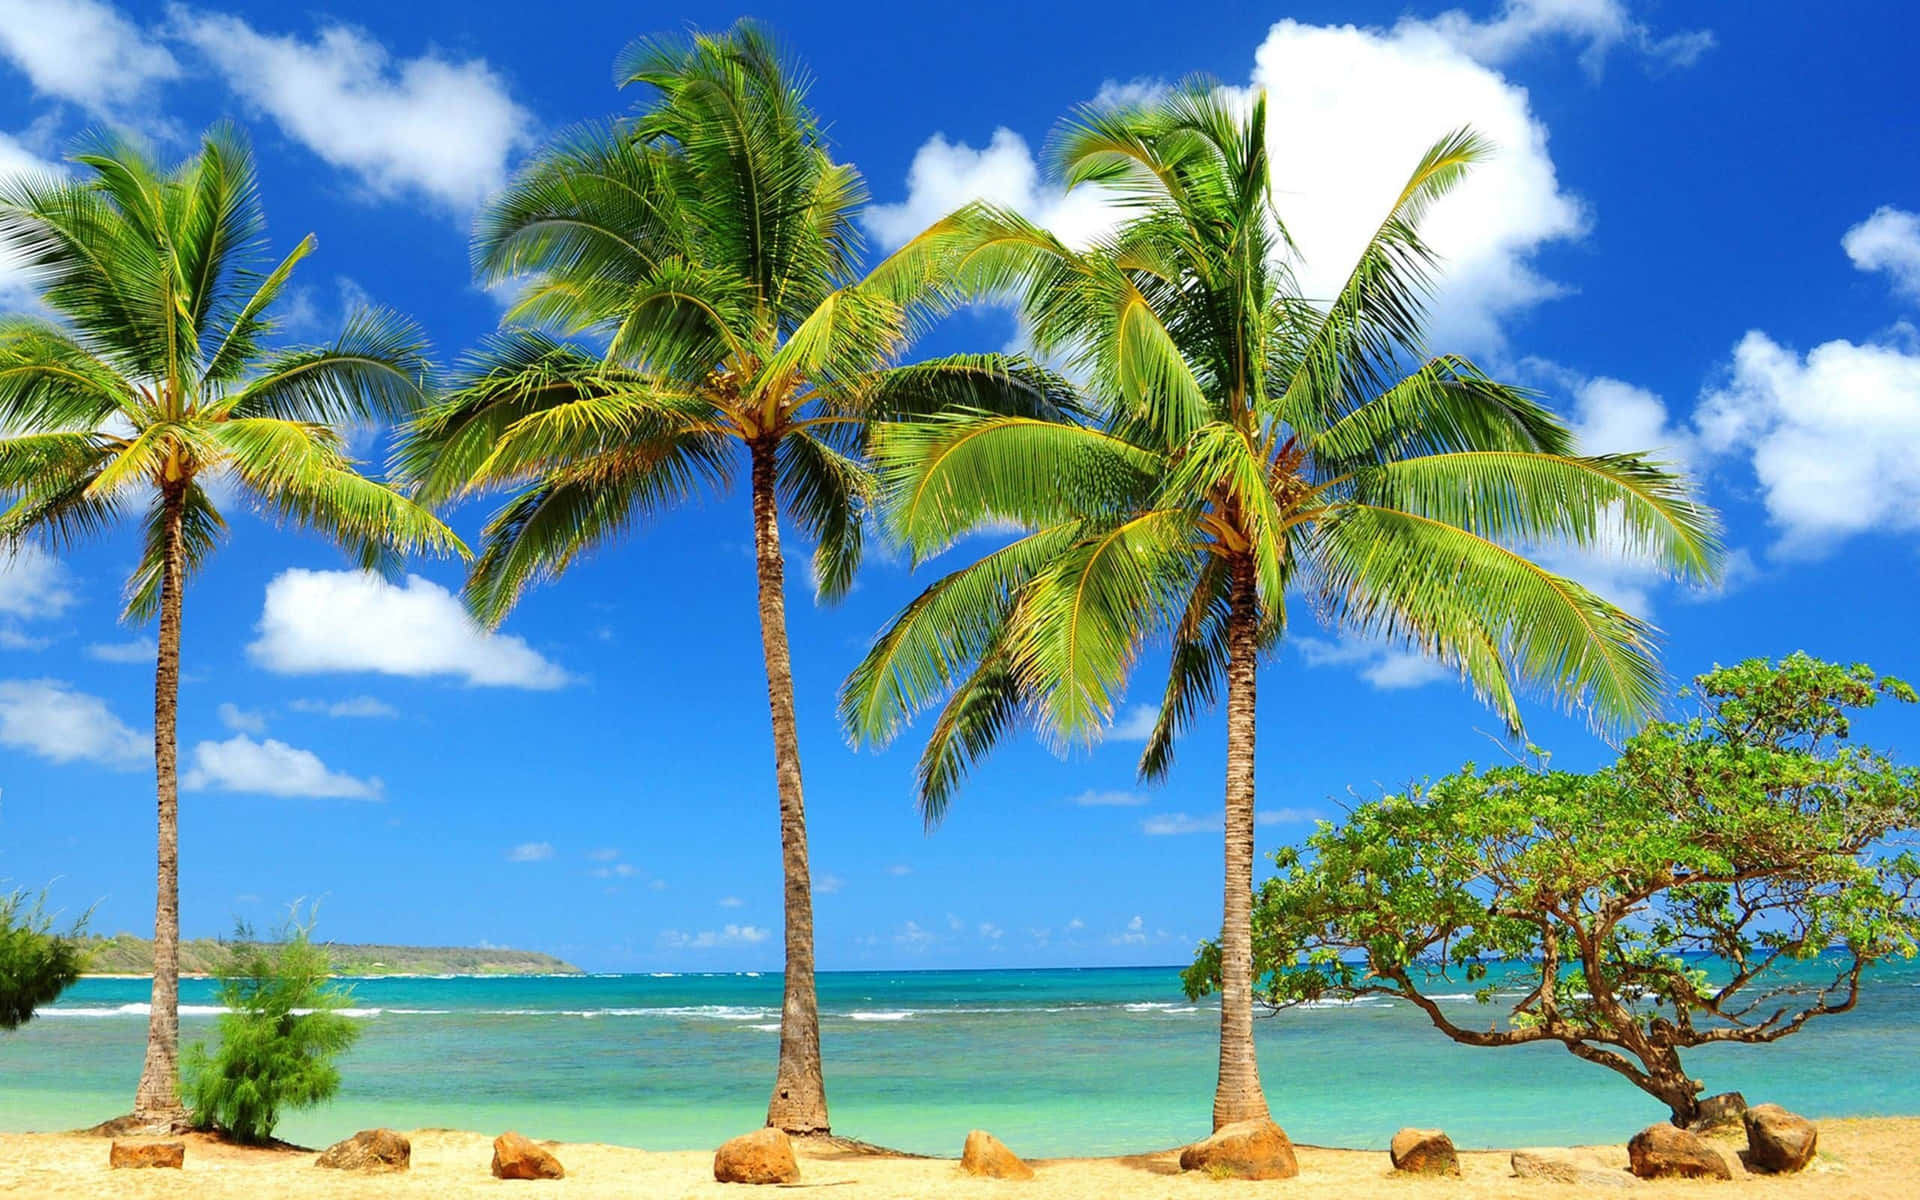 Nyd en afslappende dag med palmerne på Paradise Beach. Wallpaper